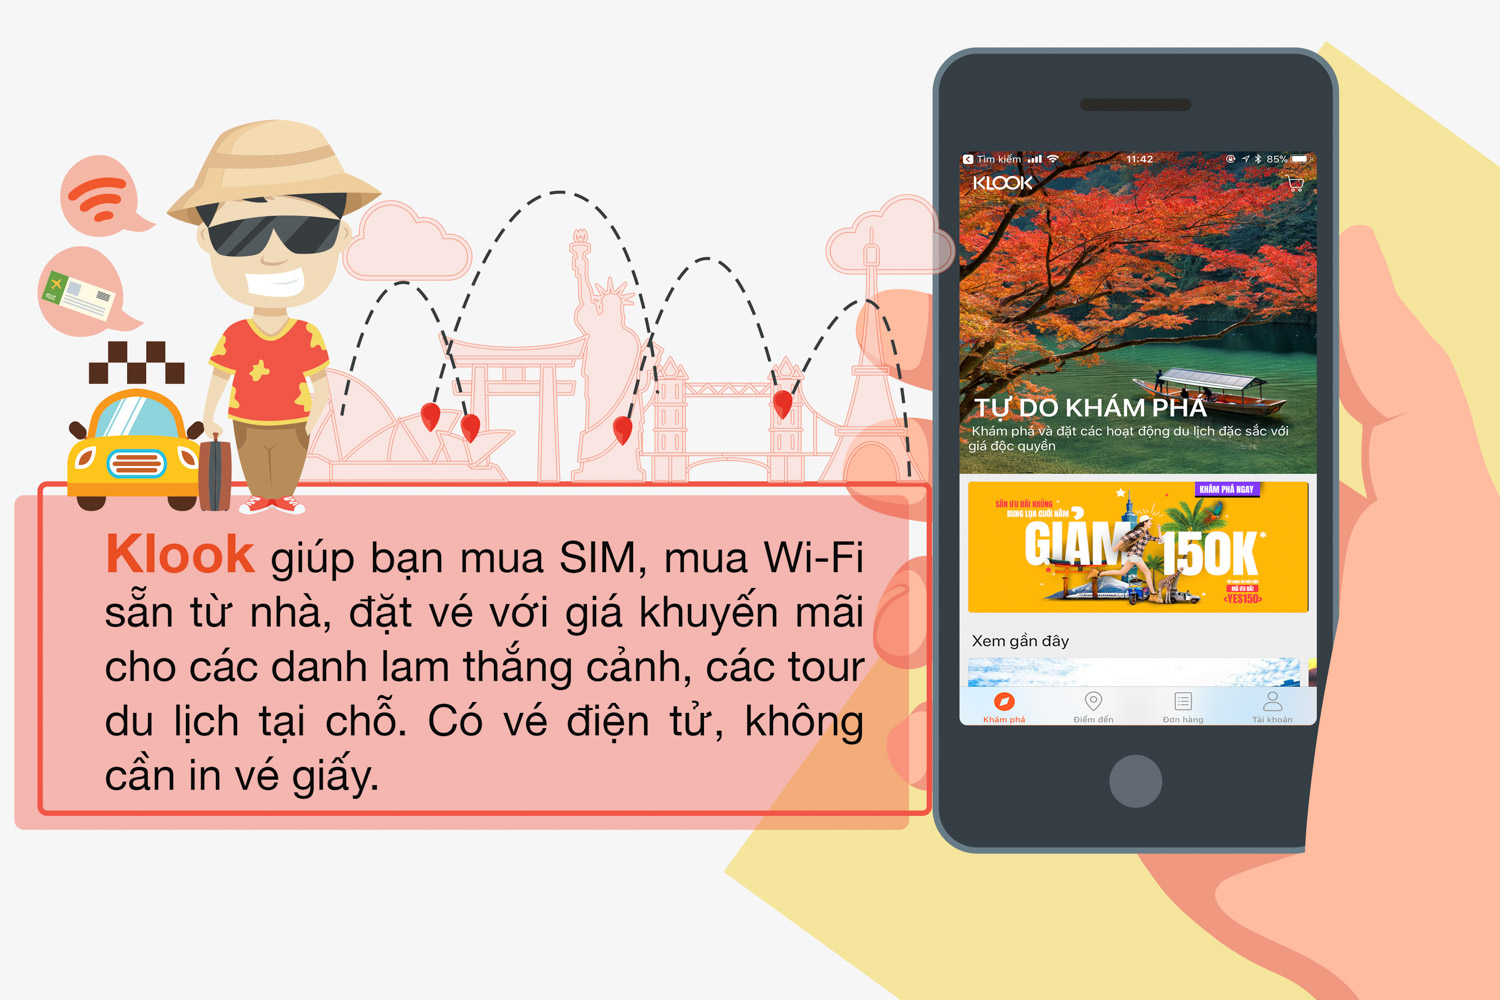 Mời dùng thử app du lịch Klook: trúng 1 chuyến đi Singapore cho anh em  Tinhte, có mã giảm 50k - 200k | Tinh tế